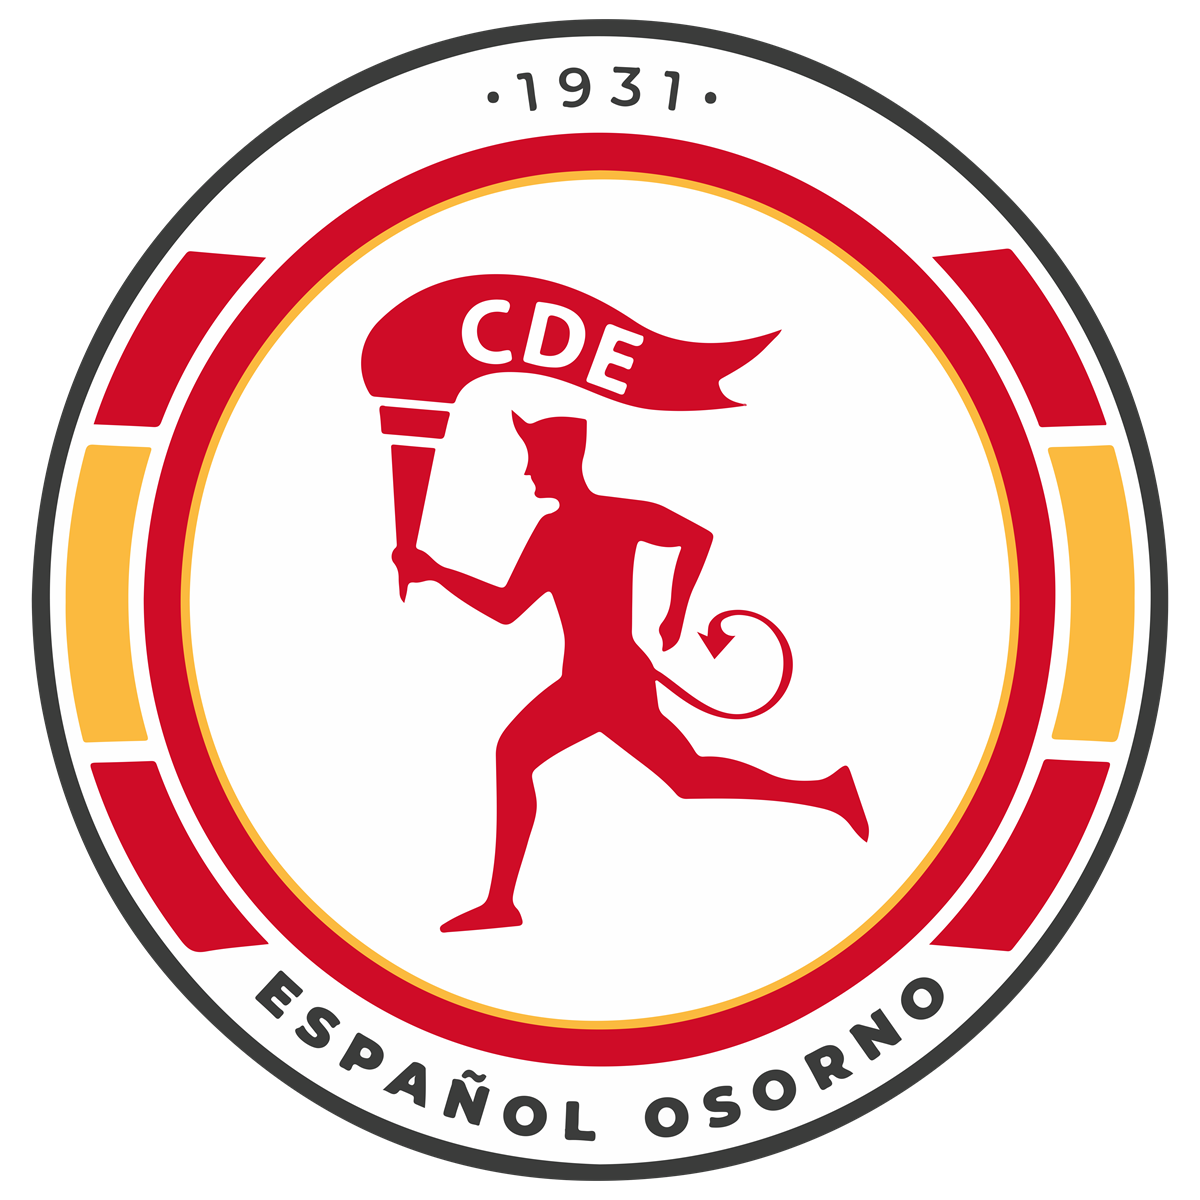 logo CD ESPANOL OSORNO